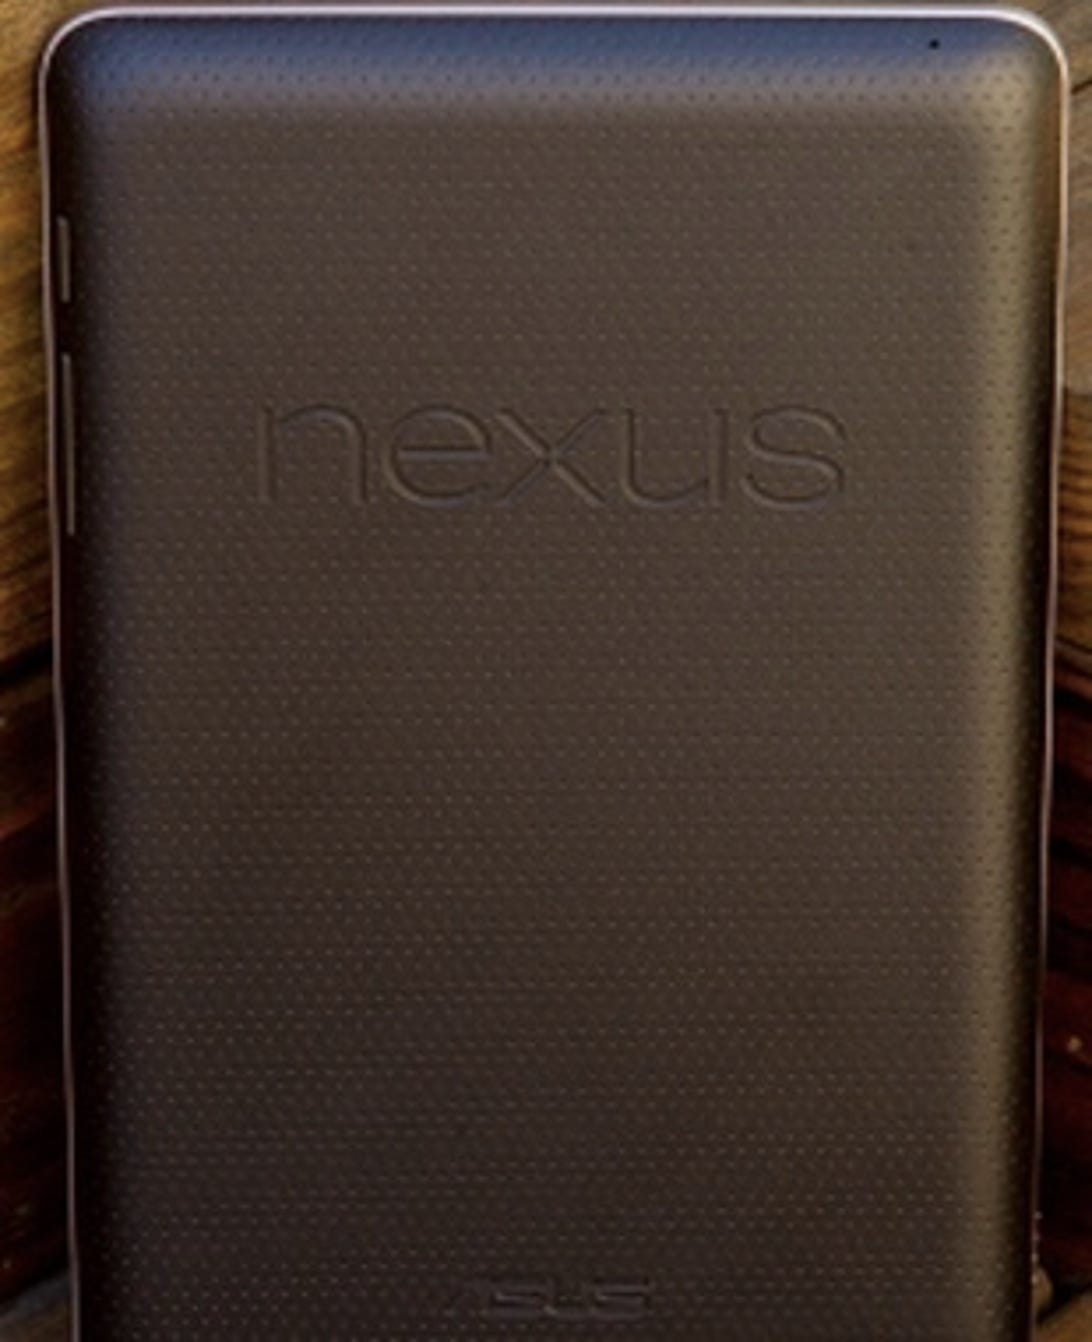 Google's Nexus tablet.